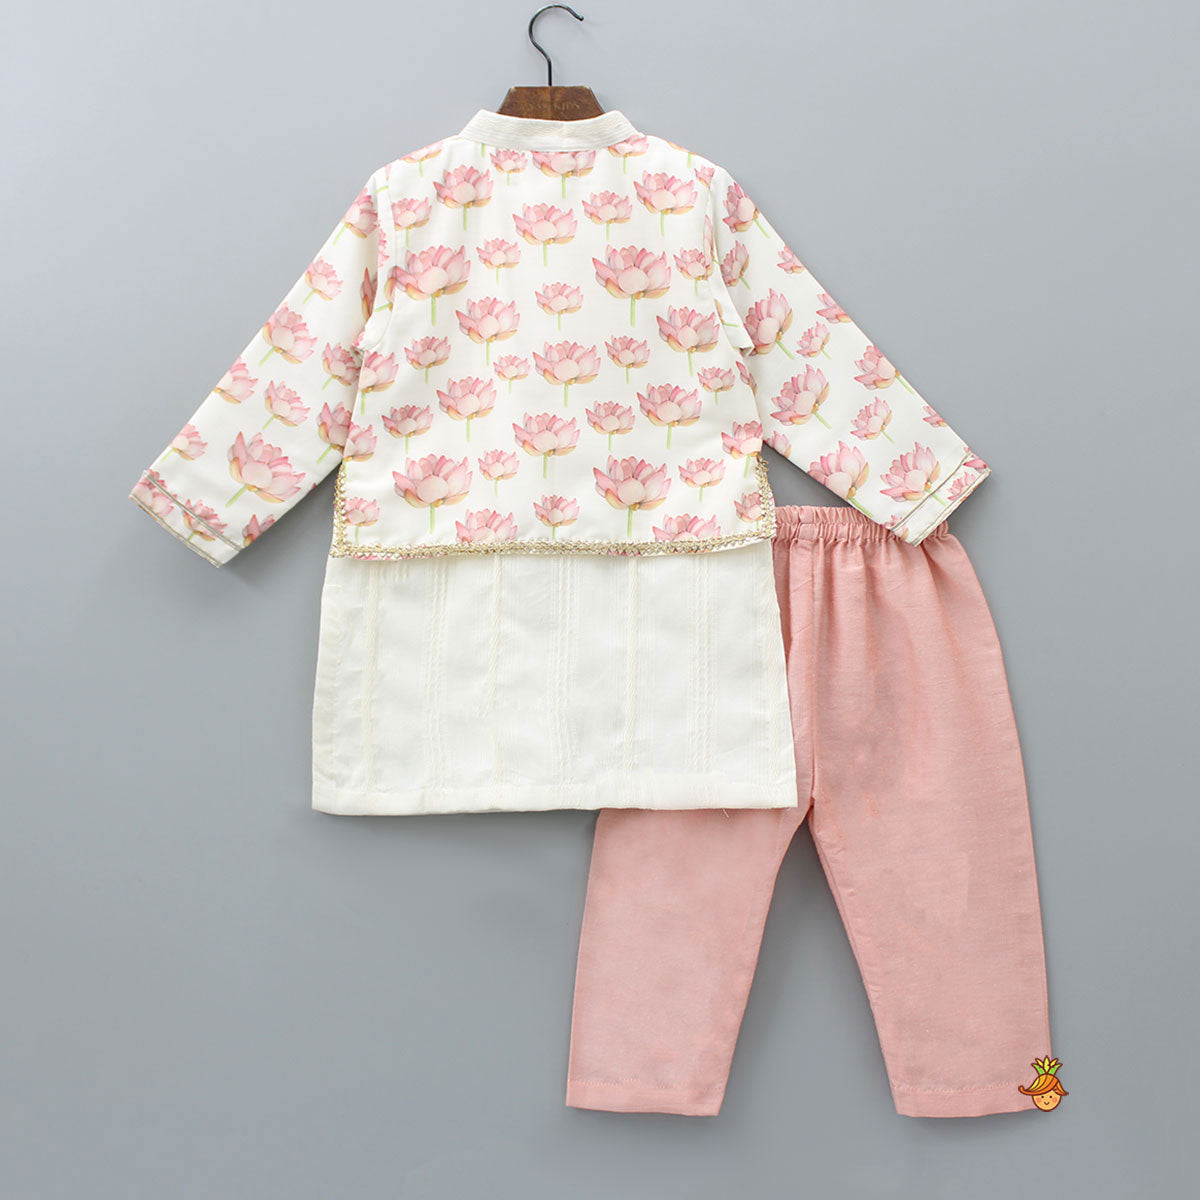 Jacket Style Lotus Printed Off White Kurta And Peach Pyjama